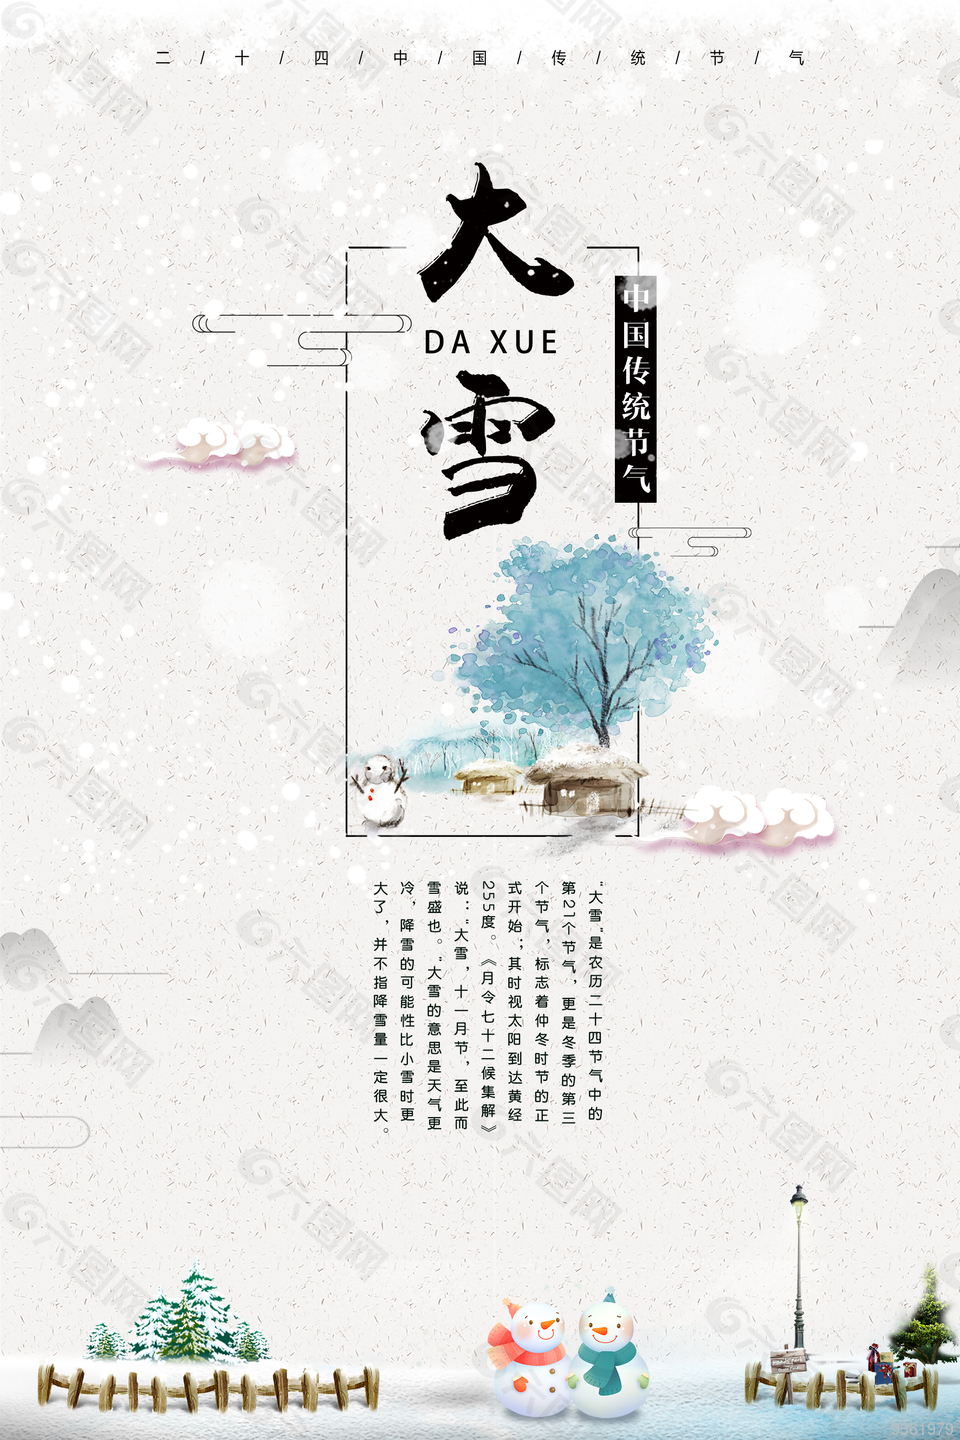 大雪中国传统节气海报下载